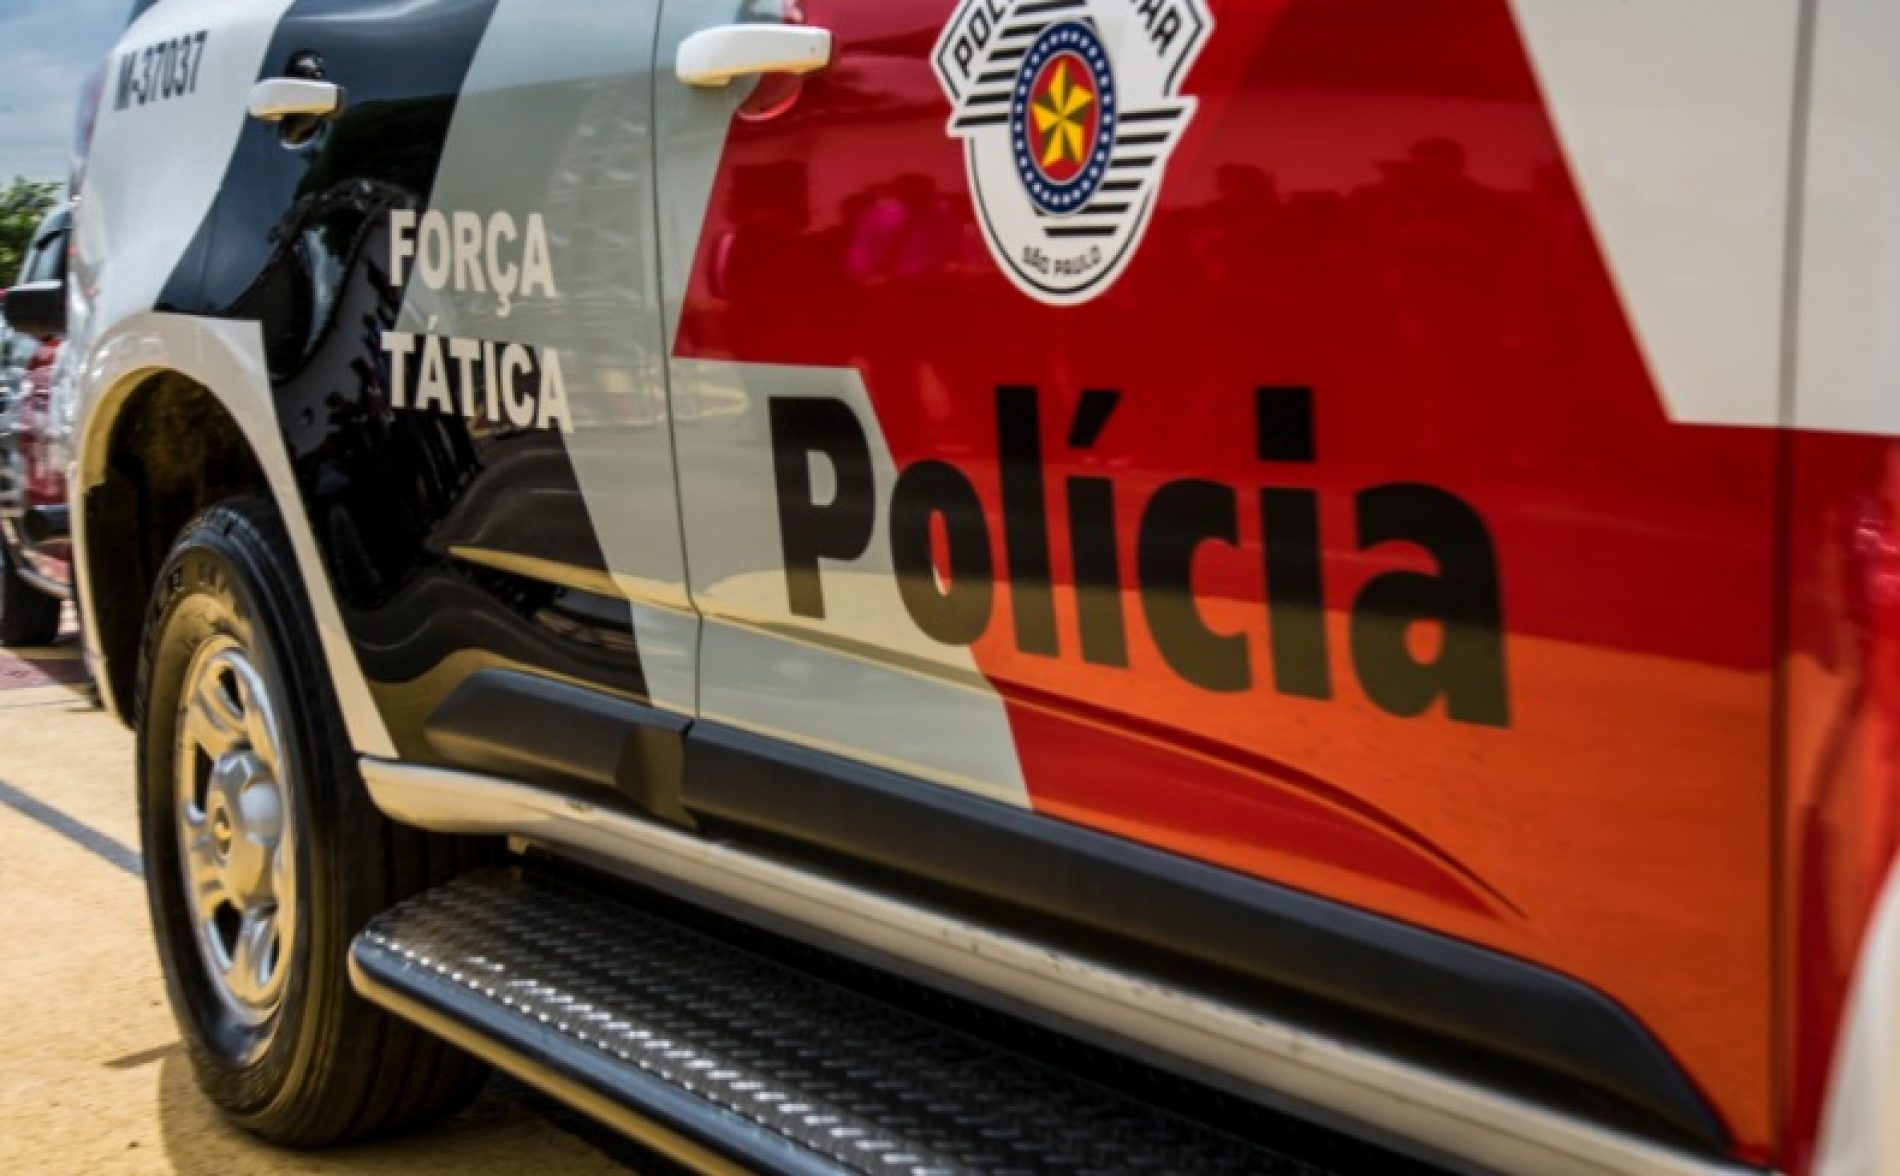 BARRETOS: Força Tática localiza em Barretos veículo roubado em Colômbia